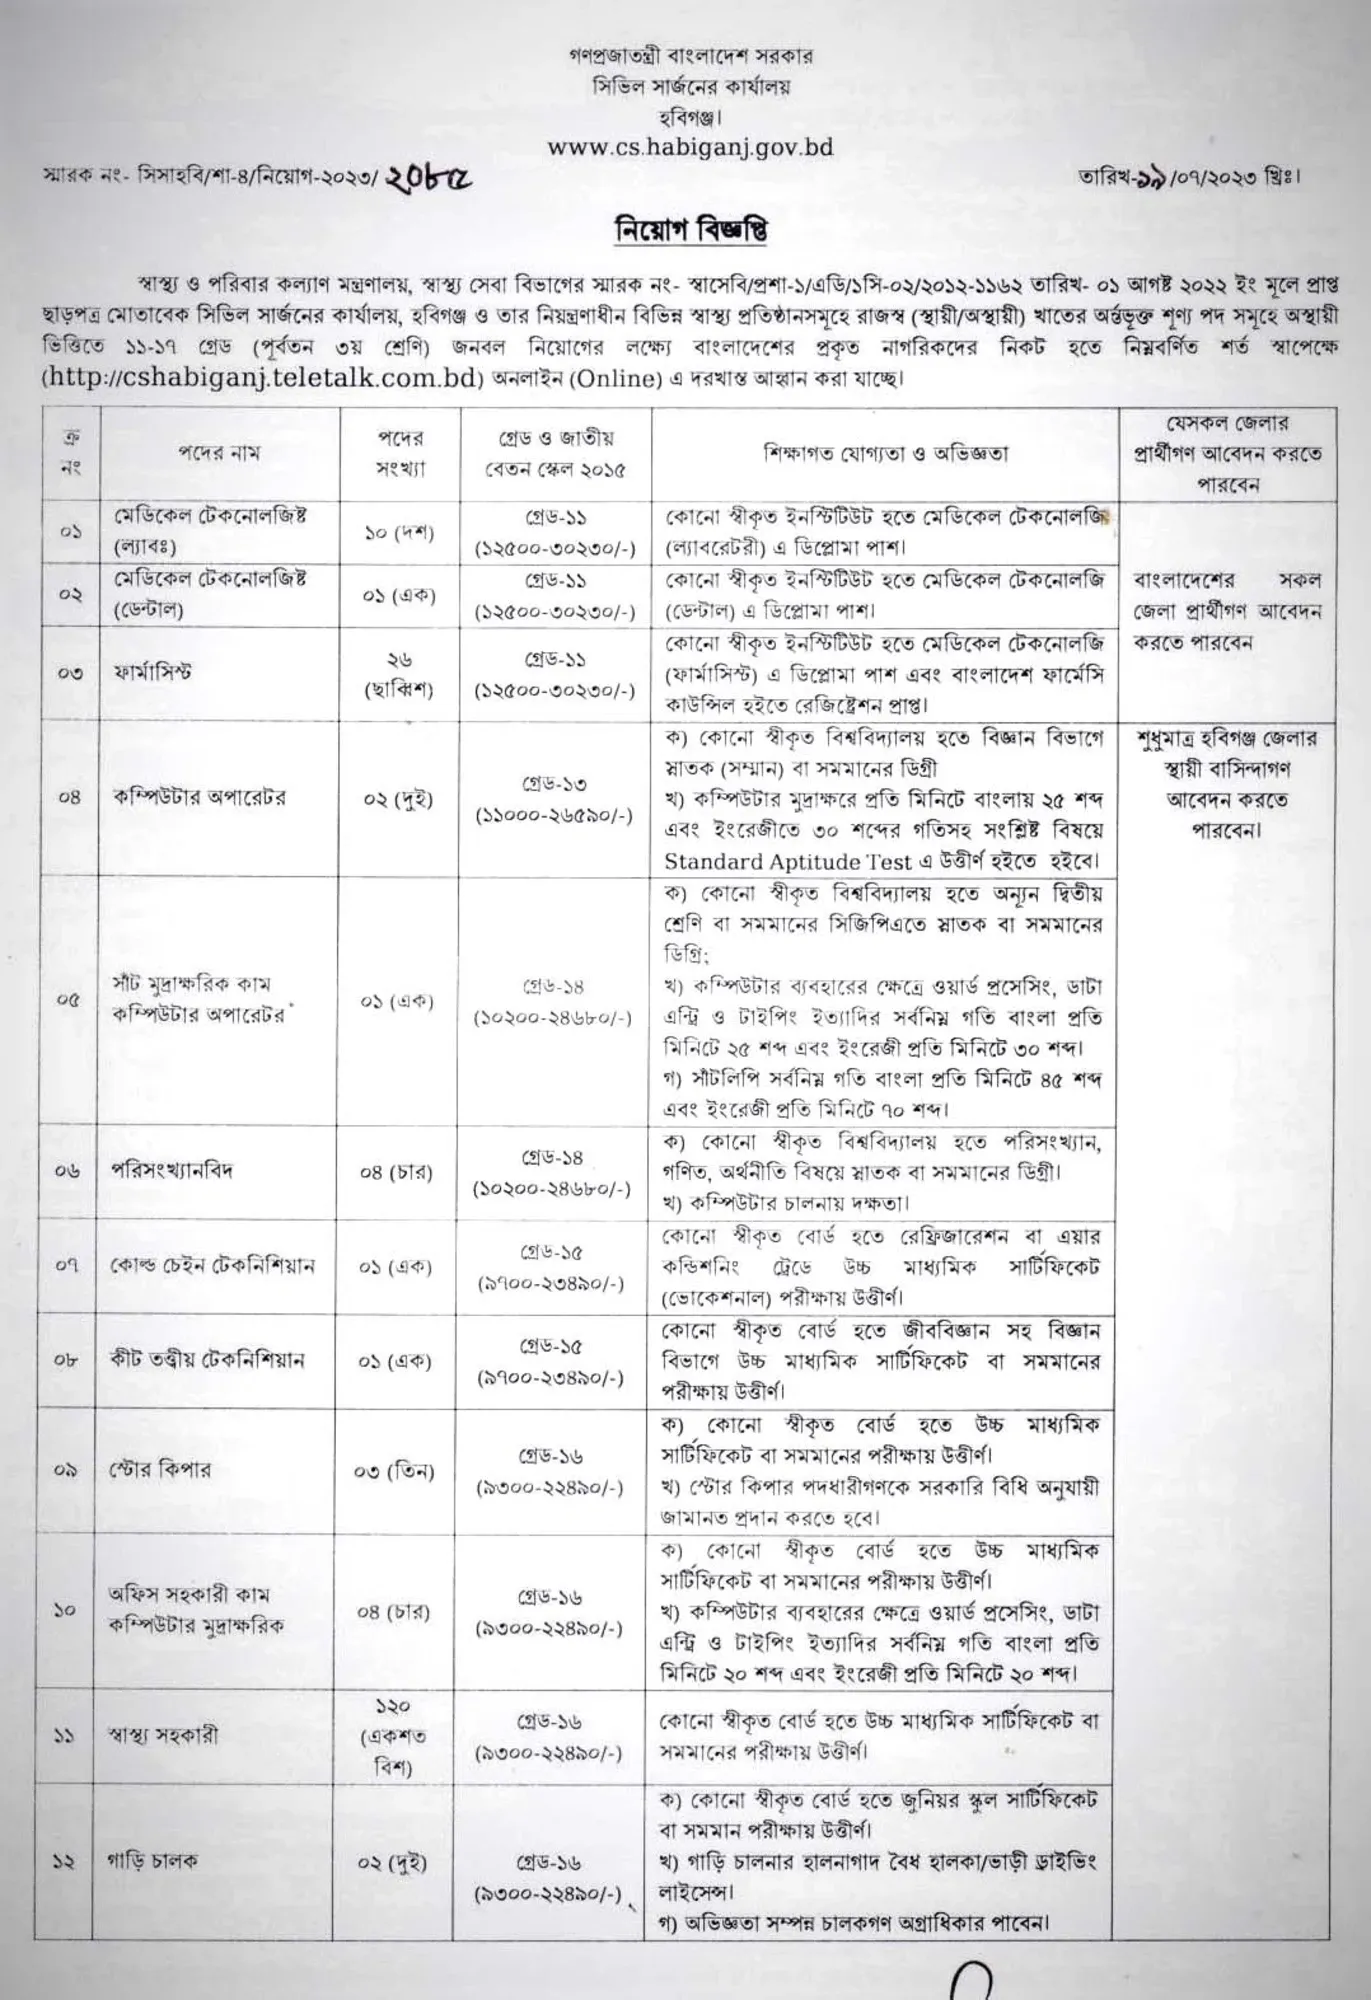 হবিগঞ্জ সিভিল সার্জনের কার্যালয়ে চাকরির খবর ২০২৩ CS Habiganj Job circular 2023